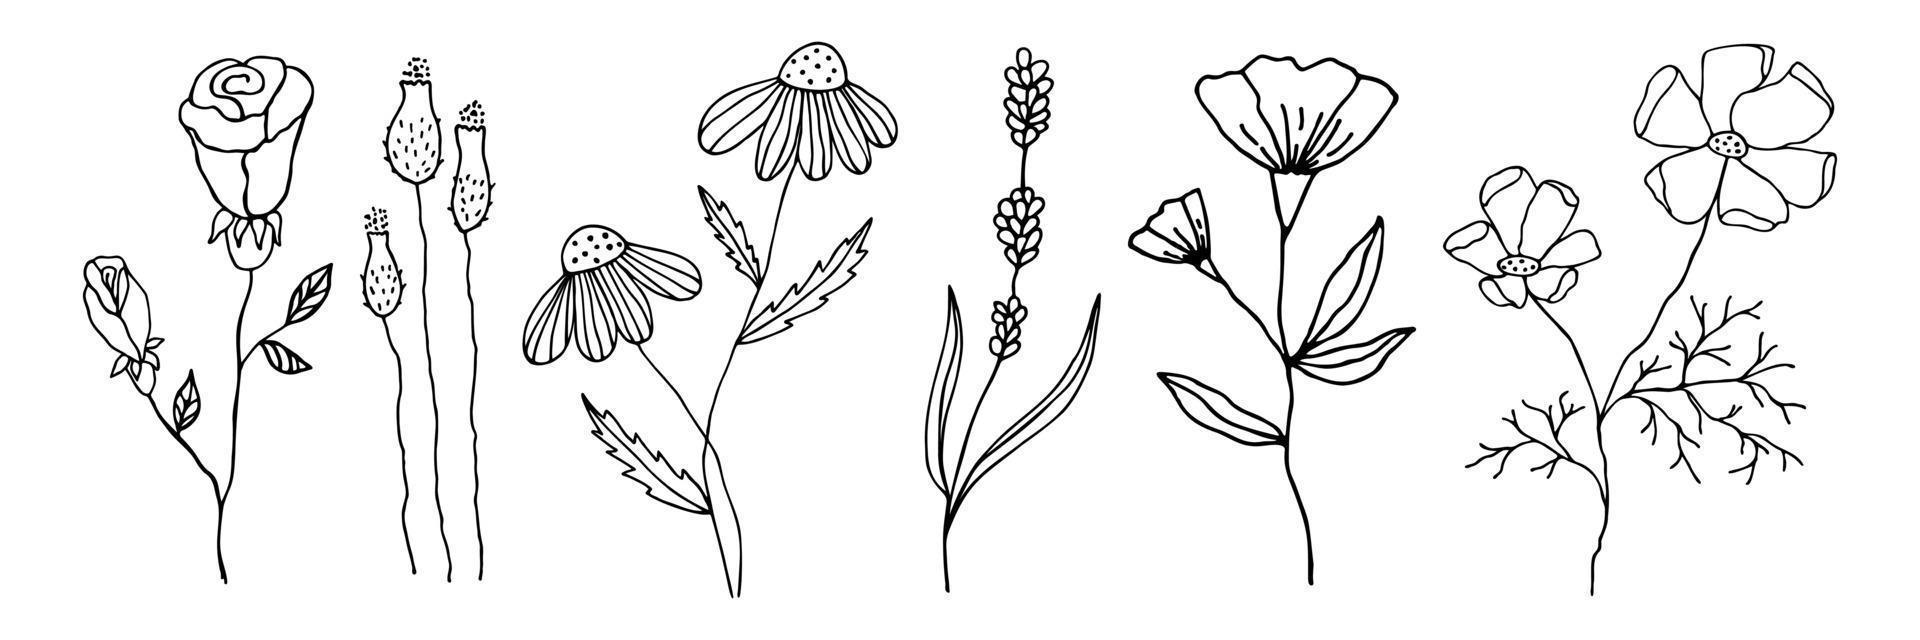 verzameling doodle bloemen in een lineaire stijl. set bloemenelementen voor elk ontwerp. vector zwarte omtrek bloemen hand getrokken geïsoleerd op een witte achtergrond.